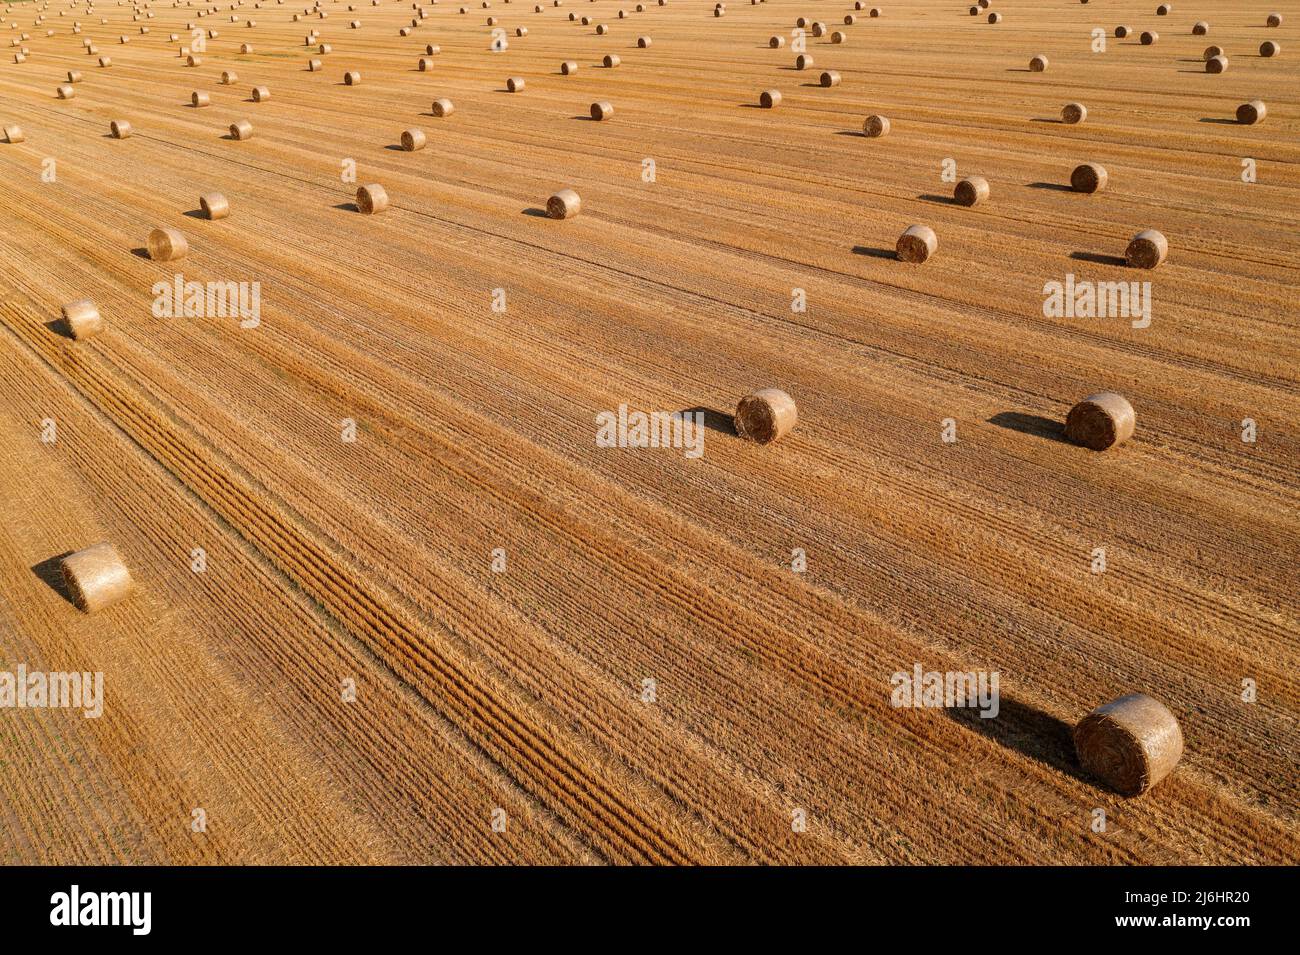 Vista aerea delle balle di fieno arrotolate nel campo di grano raccolto dal drone pov, fotografia ad angolo elevato Foto Stock